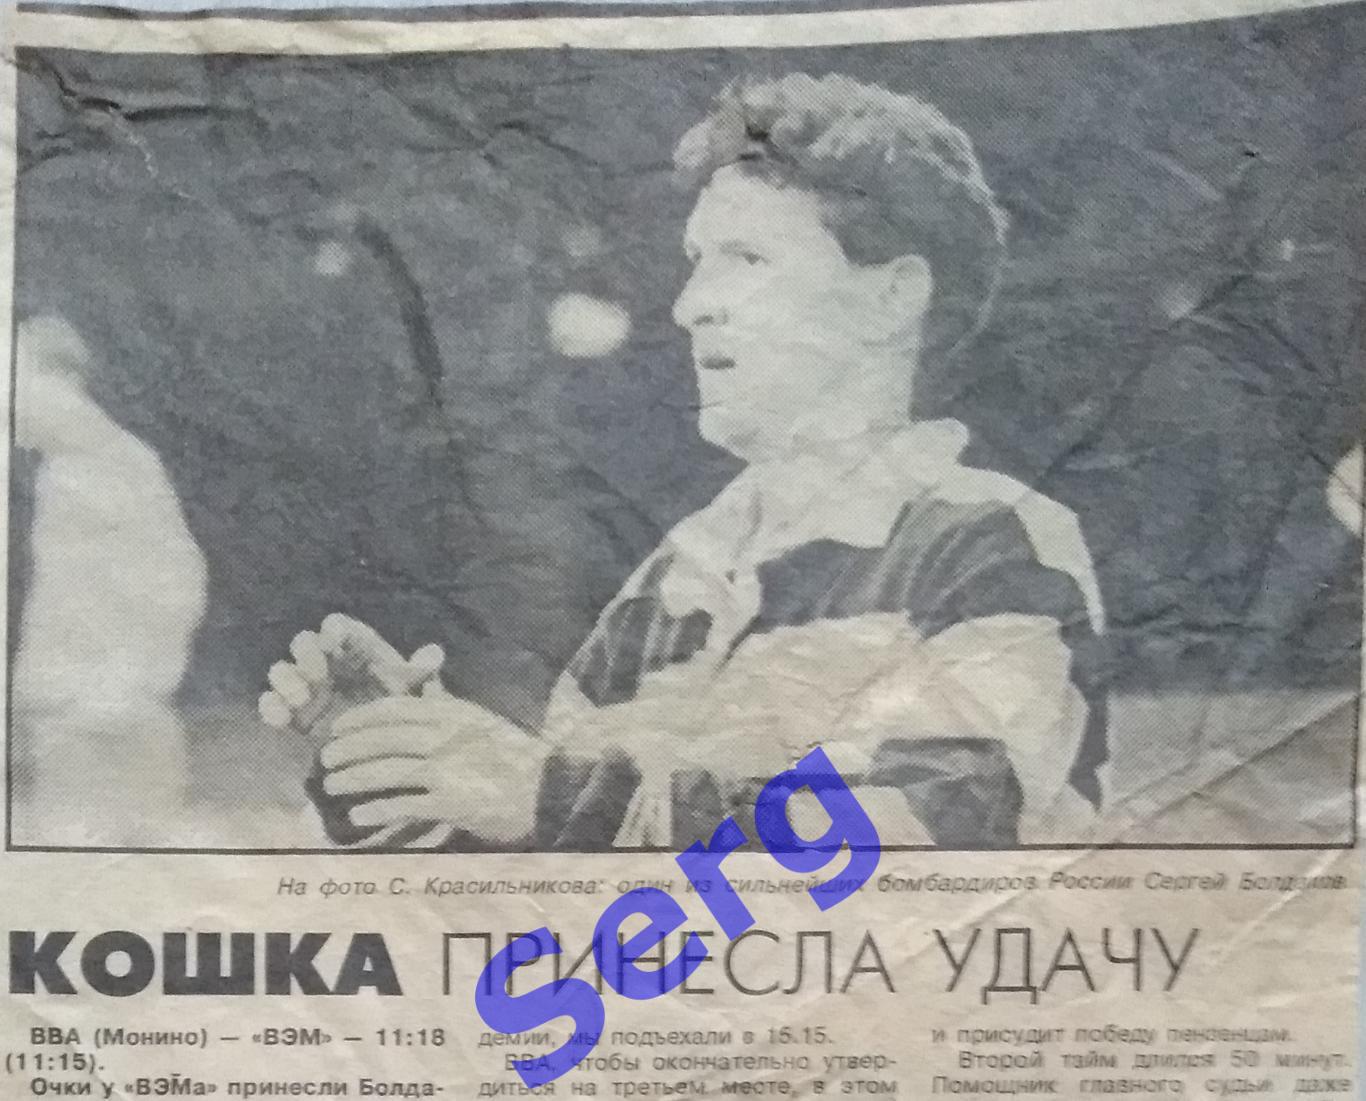 Отчет о матче по регби ВВА Монино - ВЭМ Пенза из пензенской газеты от 05.10.1995